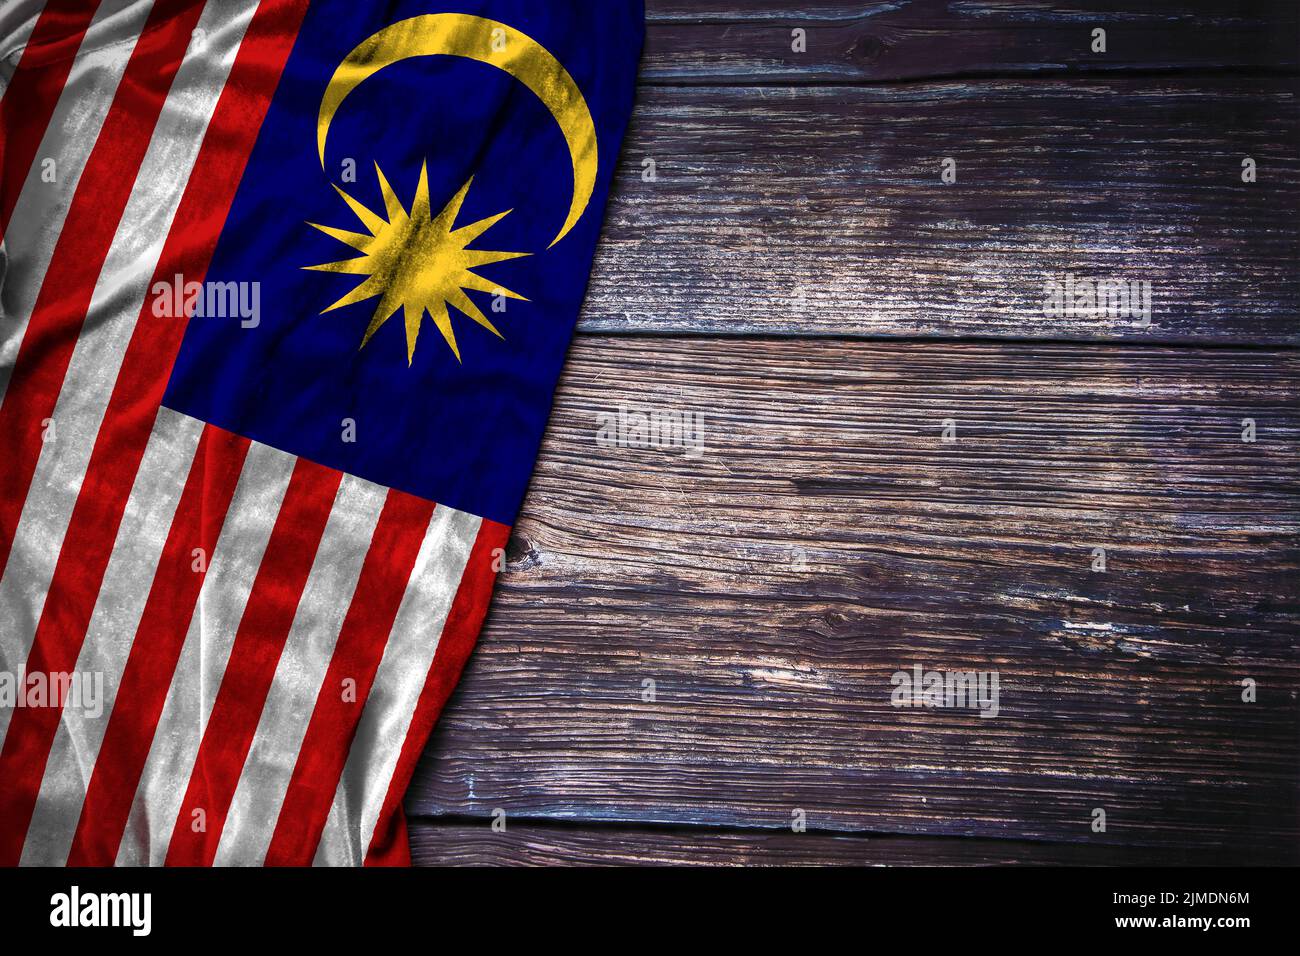 Malaysische Flagge auf rustikalem Holzhintergrund für den Nationalfeiertag, den Gedenktag oder das Labor Day Konzept. Stockfoto